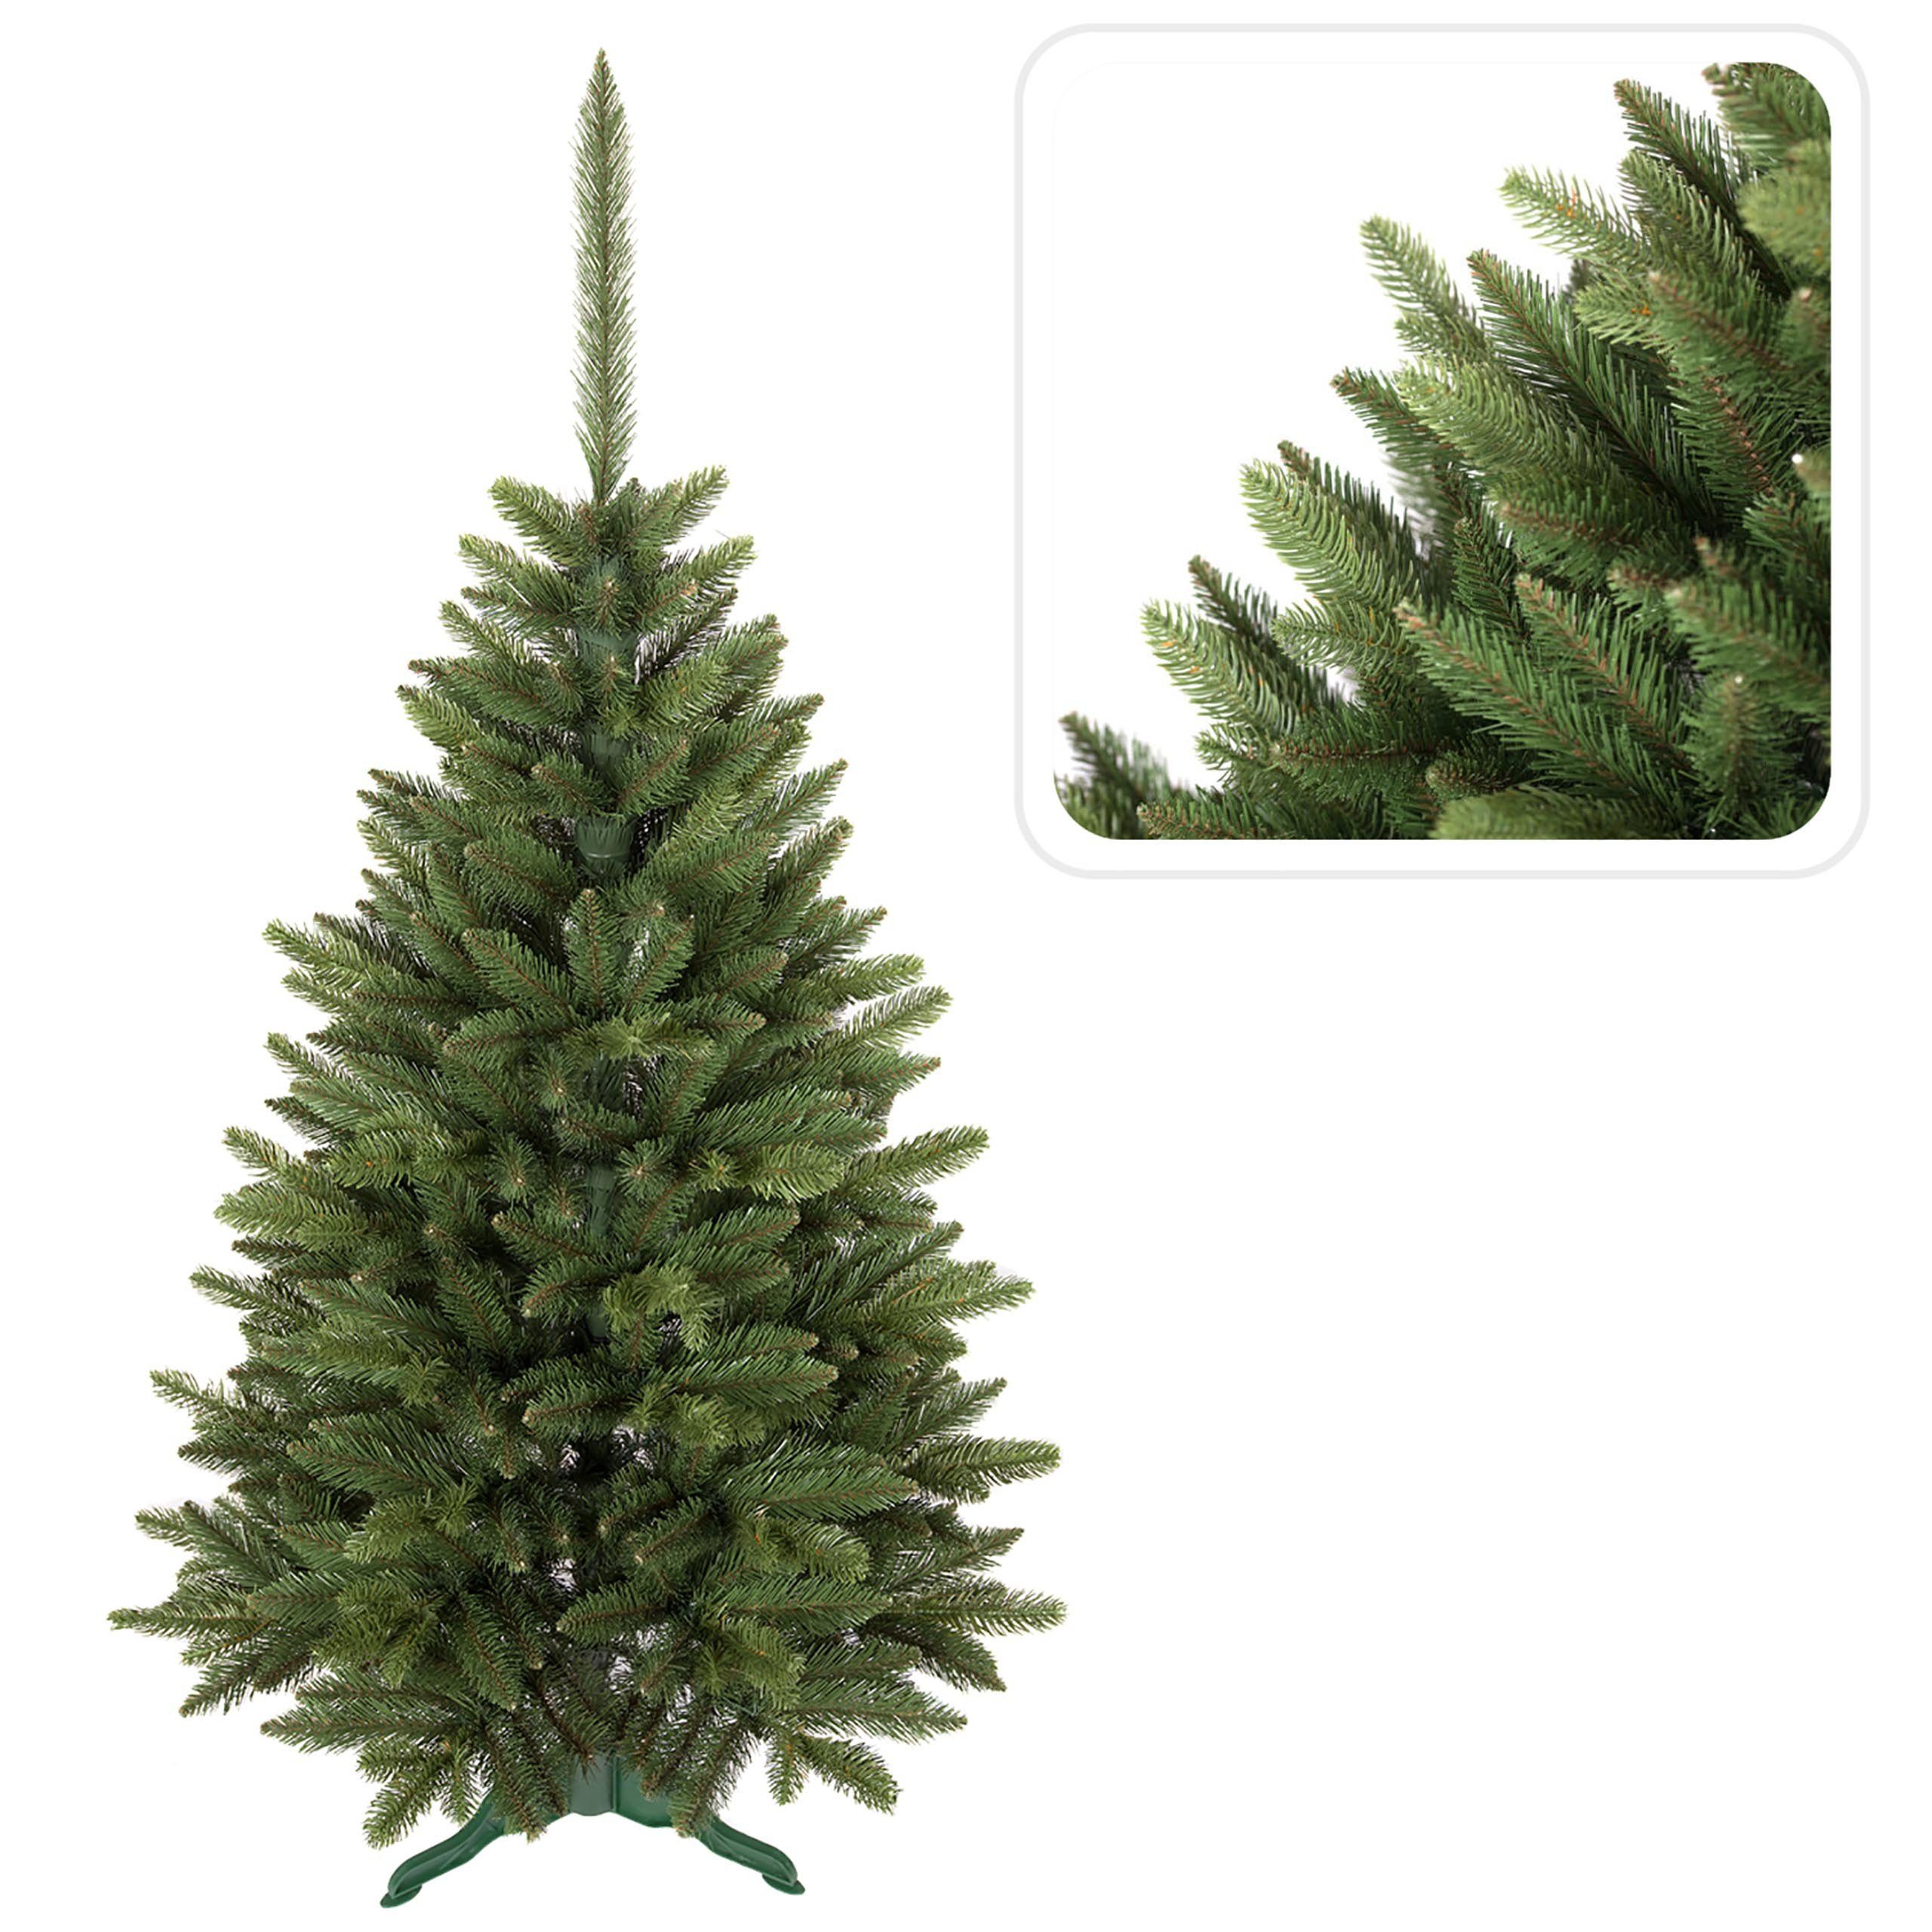 Bergam-Fichte Künstlicher Weihnachtsbaum 180cm PVC Künstlicher Sarcia.eu Weihnachtsbaum